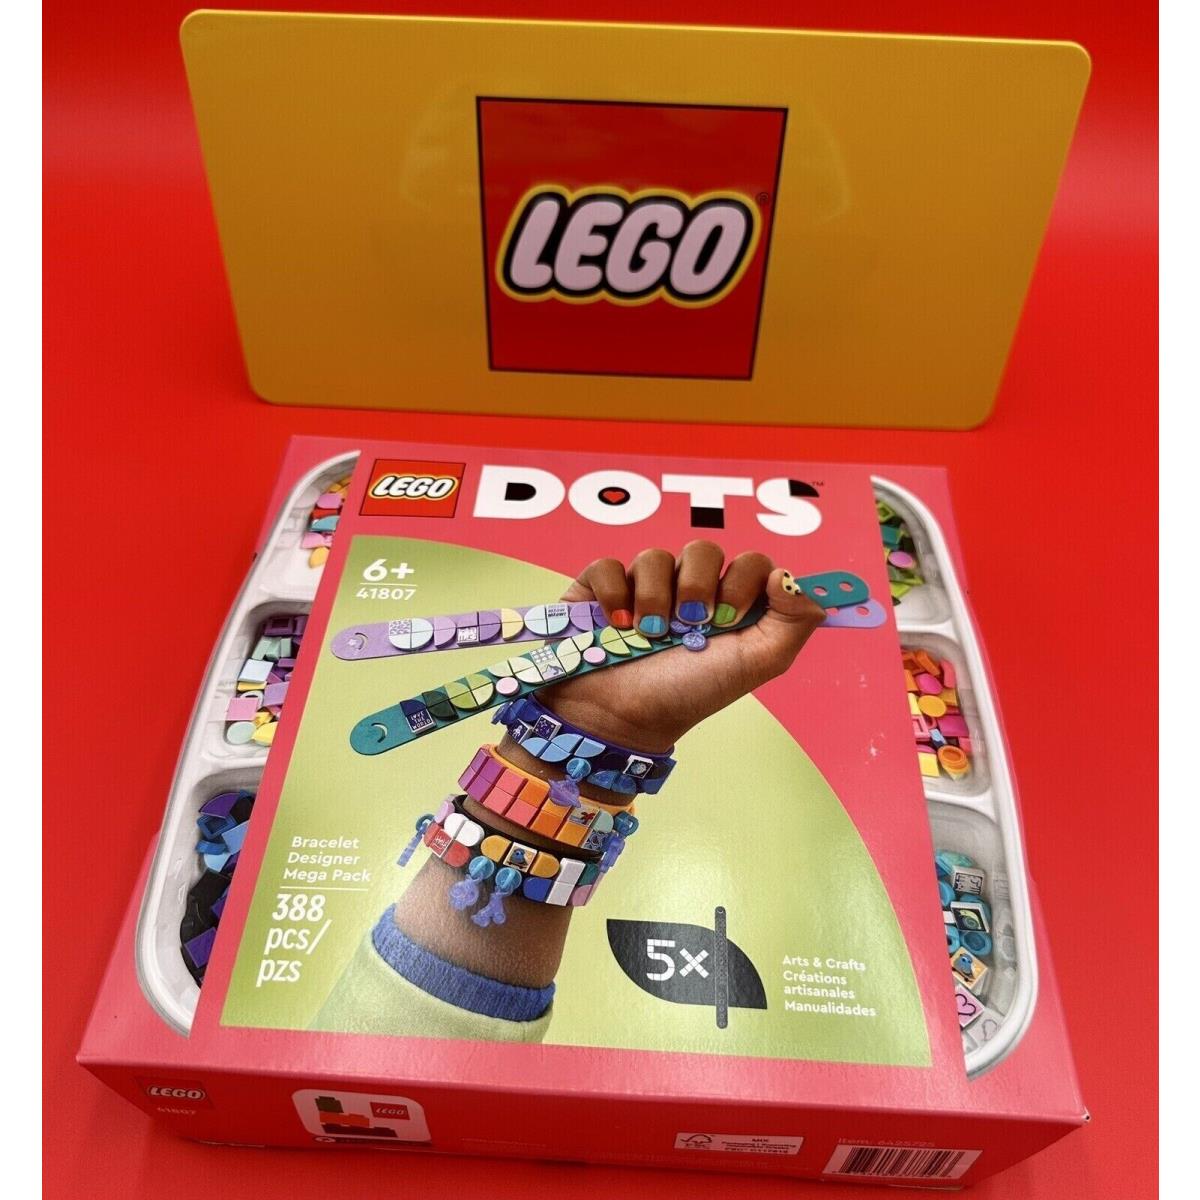 Lego Dots: Bracelet Designer Mega Pack 41807 Building Set